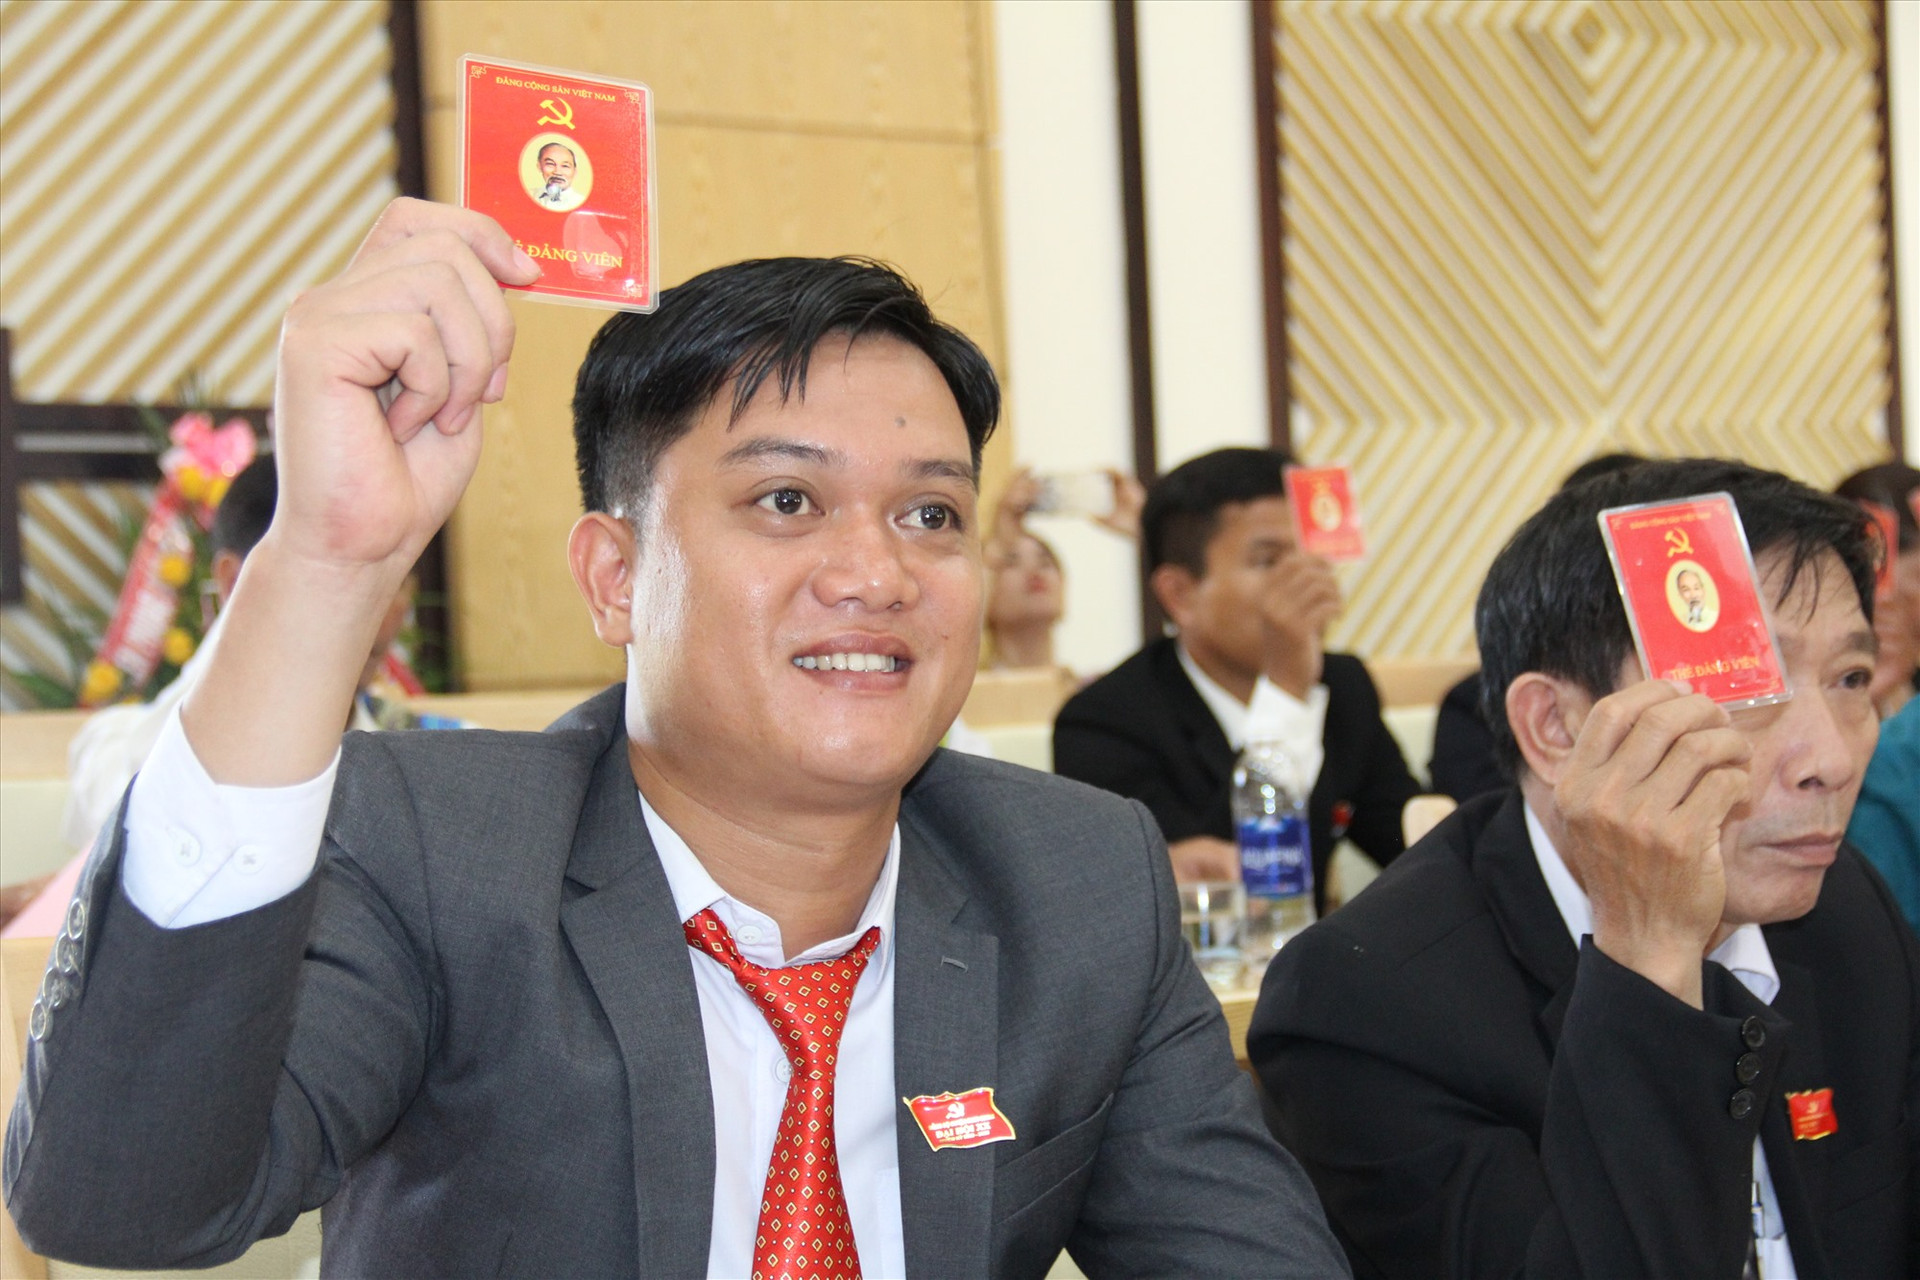 Bí thư Huyện đoàn Nam Giang - Bùi Thế Anh trở thành một trong số Huyện ủy viên trẻ nhất của địa phương.